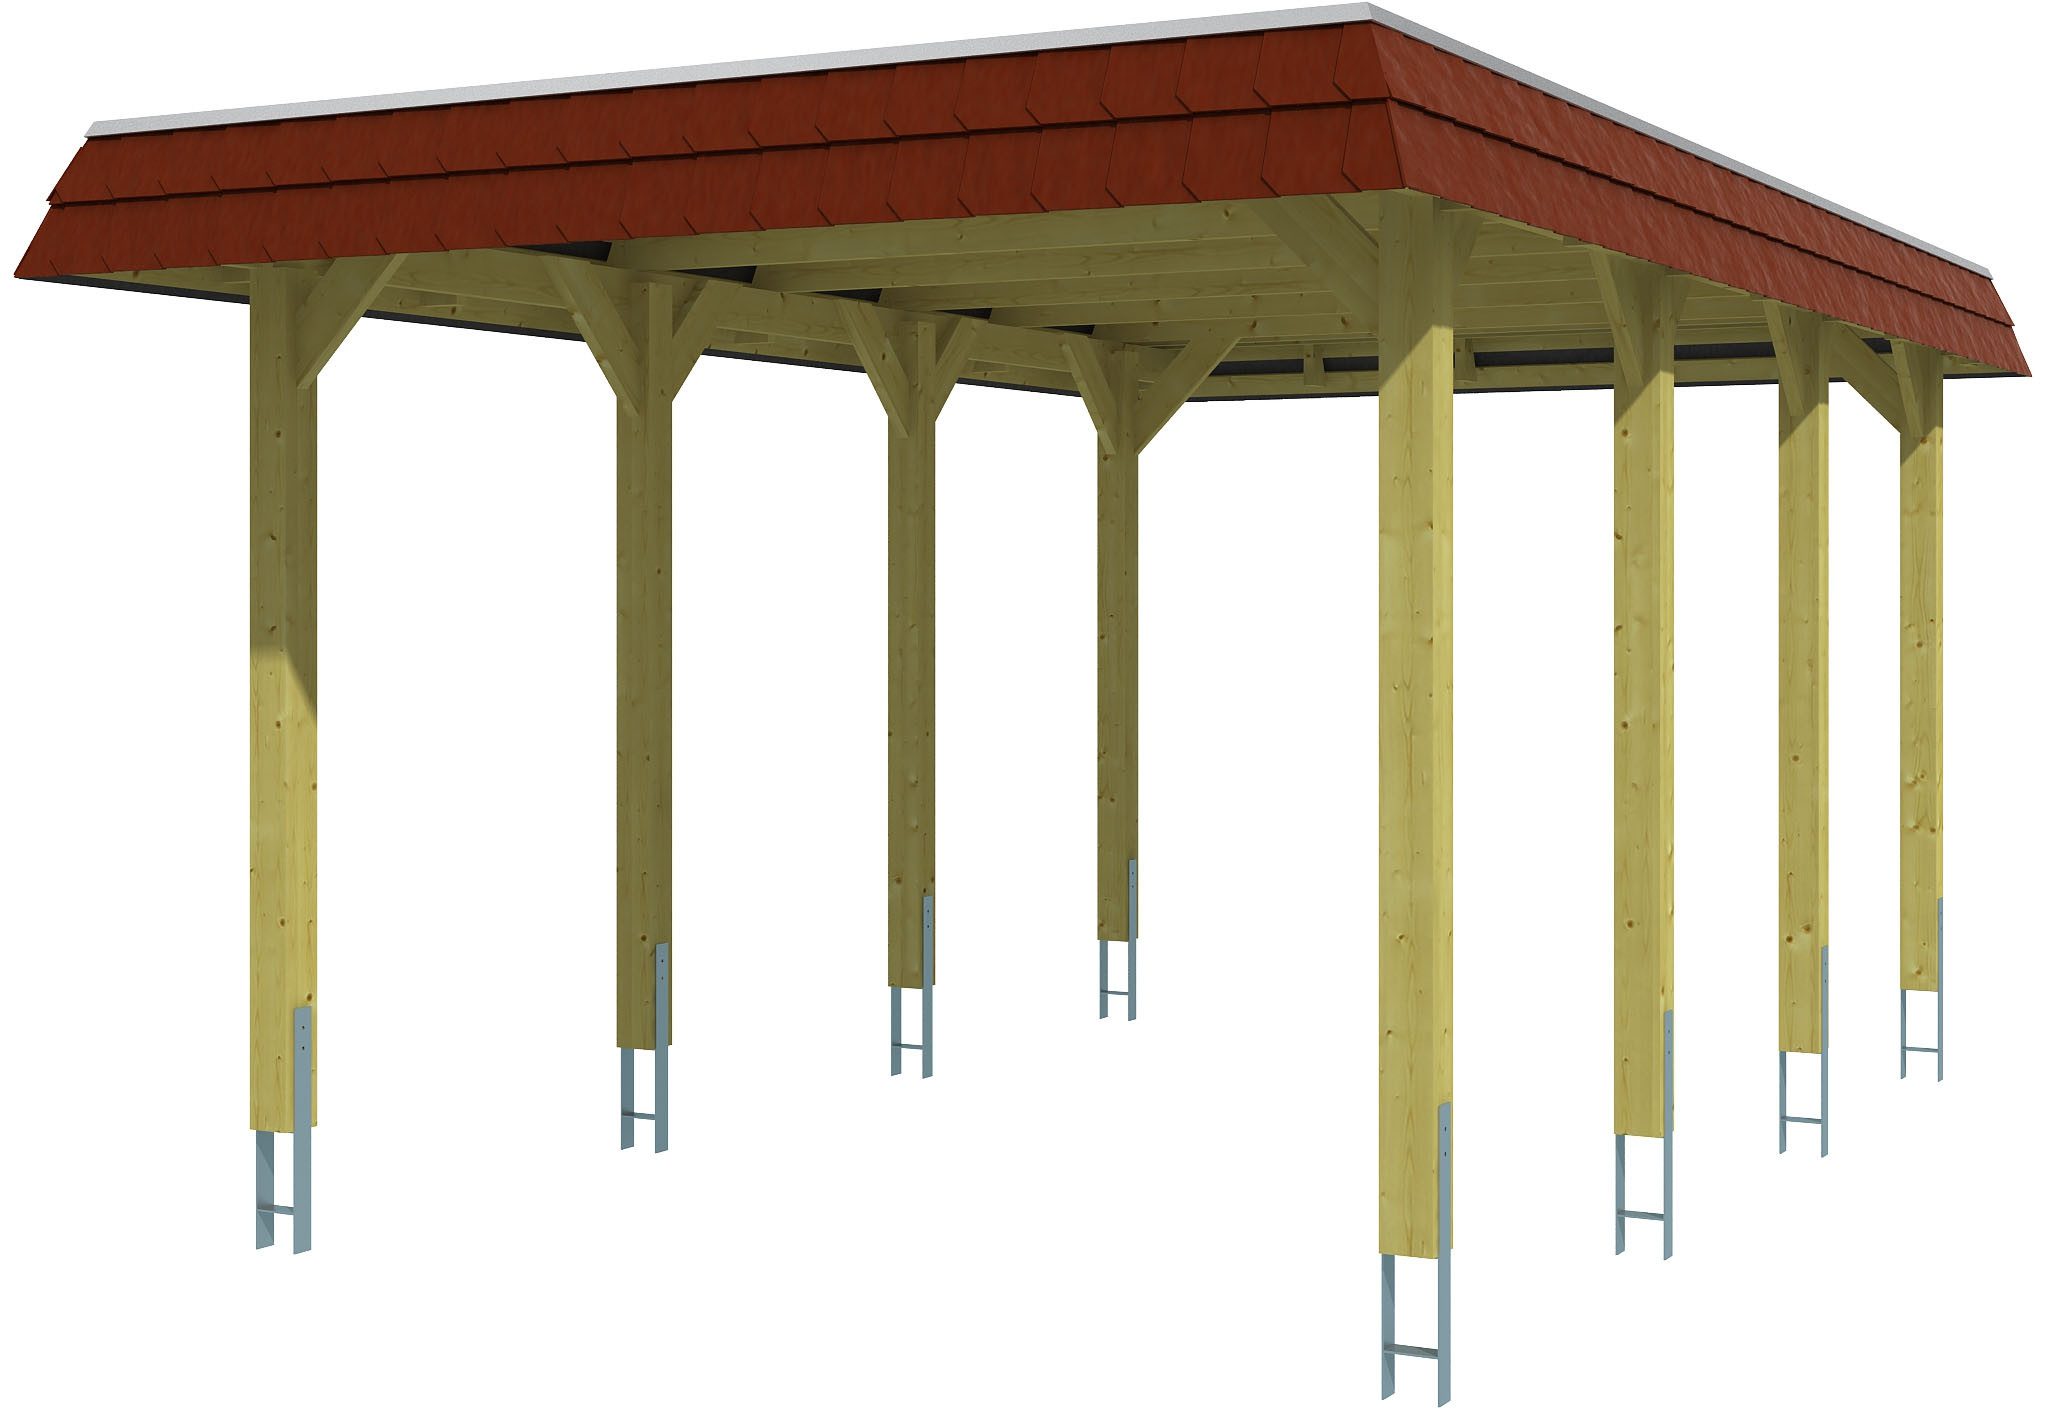 Skanholz Einzelcarport Spreewald, BxT: 345x589 cm, 206 cm Einfahrtshöhe, mit EPDM-Dach, rote Blende